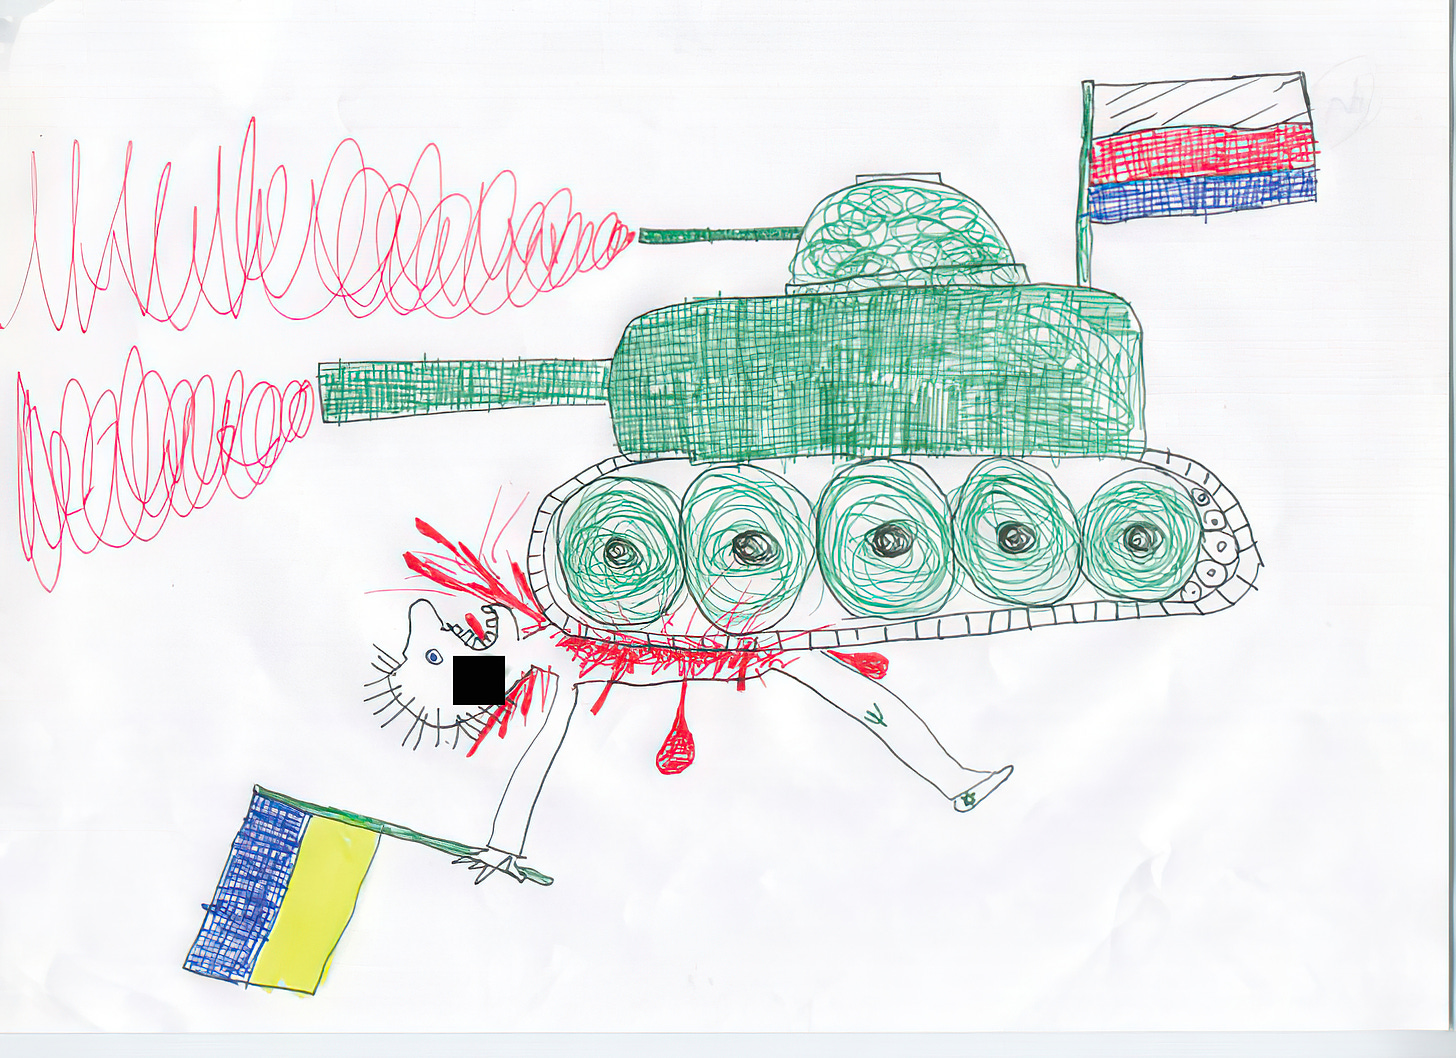 Ein Panzer mit einer farblich fehlerhaften Russlandflagge überfährt einen Mann mit einer Ukraineflagge in der Hand. Blut spritzt aus seinem Körper. Auf der Wange hat er ein Hakenkreuz (hier mit schwarzem Balken zensiert). Auf dem Knie sieht man ein Zeichen, das evtl. den Dreizack der Ukraine zeigt. Auf dem Schuh sieht man ganz schwach ebenfalls ein Symbol. Es könnte ein Davidstern sein, allerdings ist die Qualität zu schlecht, um das mit Gewissheit zu sagen.